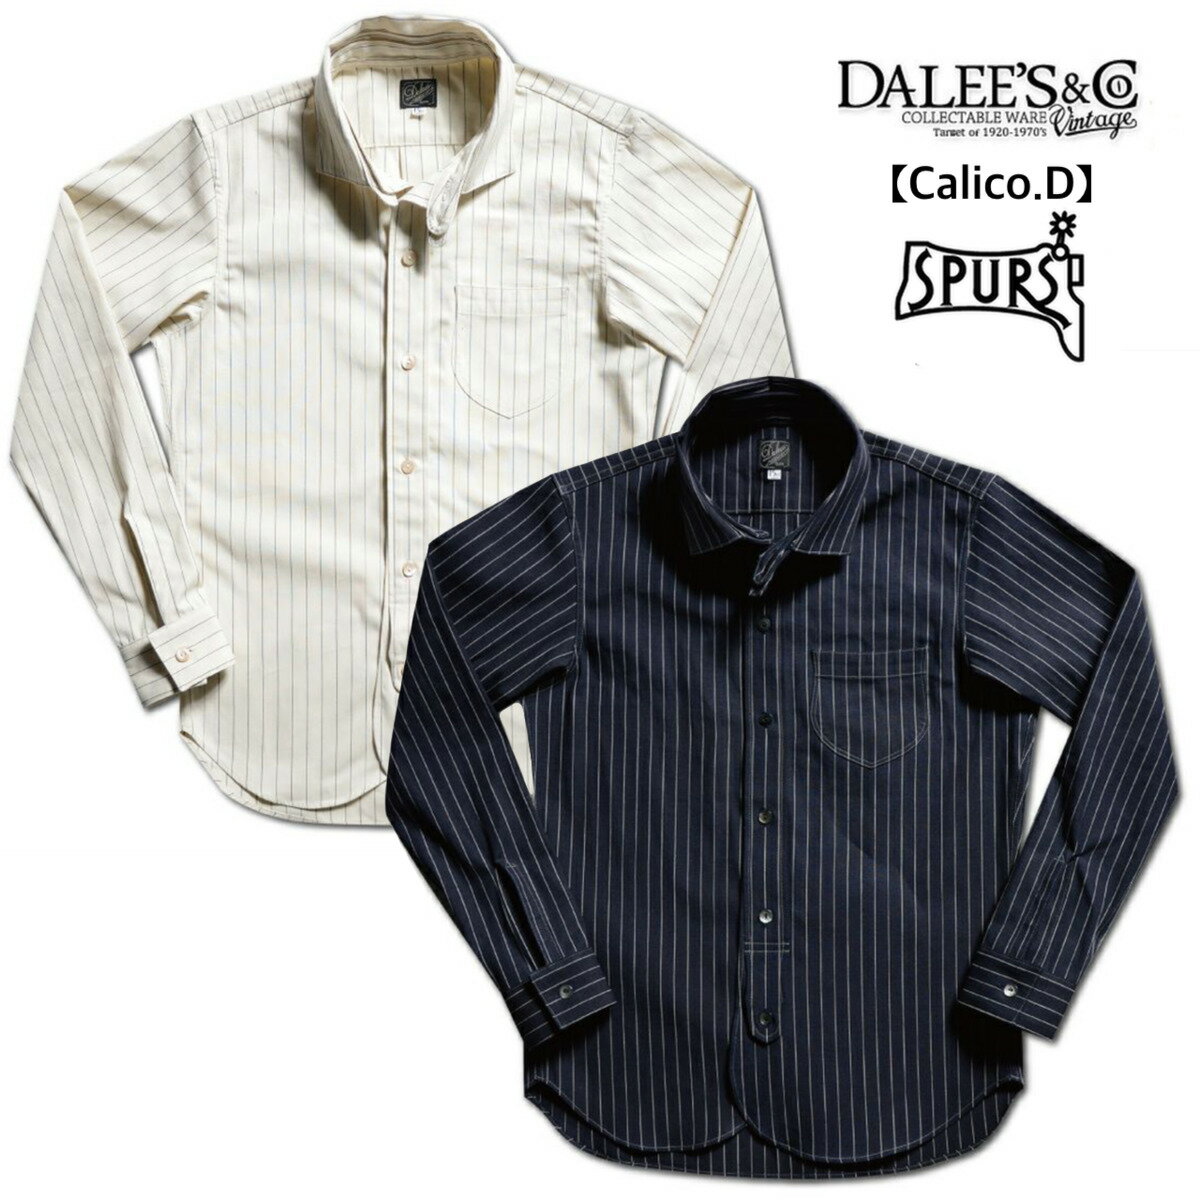 DALEE'S&CO (ダリーズ＆コー) 30s Calico shirt  シャツ クラシカル ワークスタイル チェンジカラー ストライプ コットン インディゴ アメカジ メンズ 日本製 送料無料